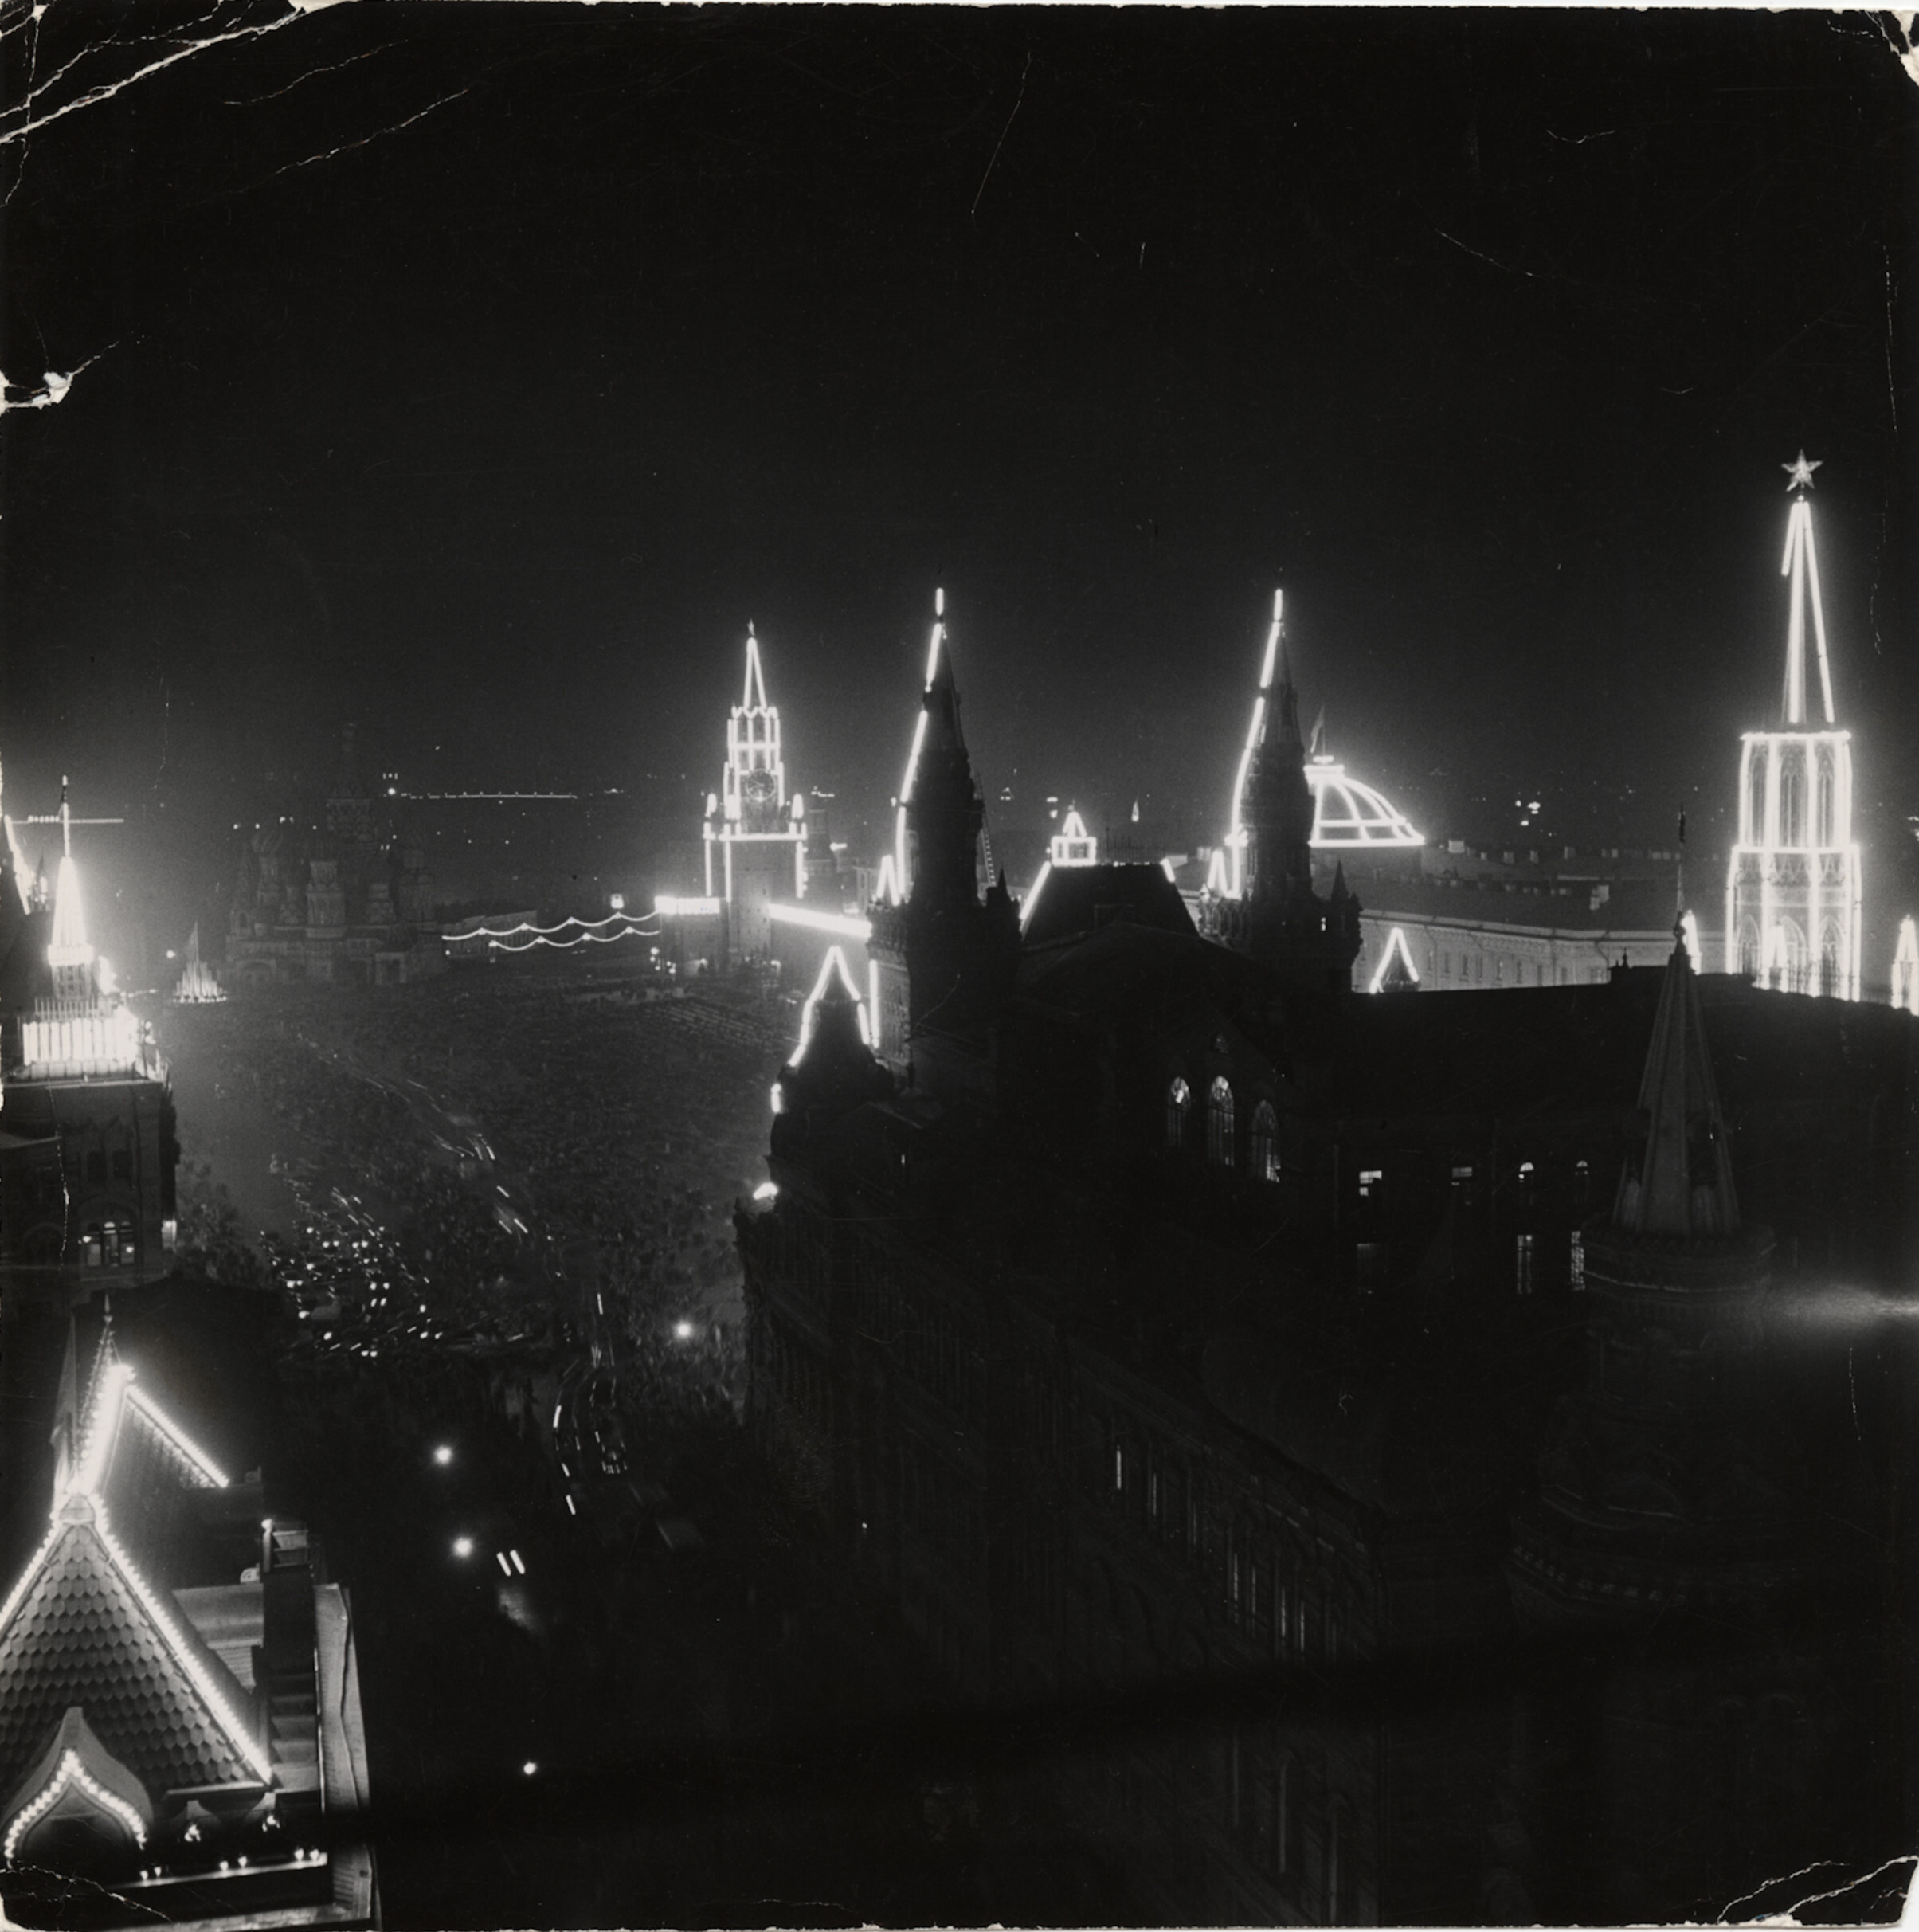 Огни, освещающие здания Красной площади во время празднования годовщины Москвы, Москва, 1947 год. Фотограф Роберт Капа